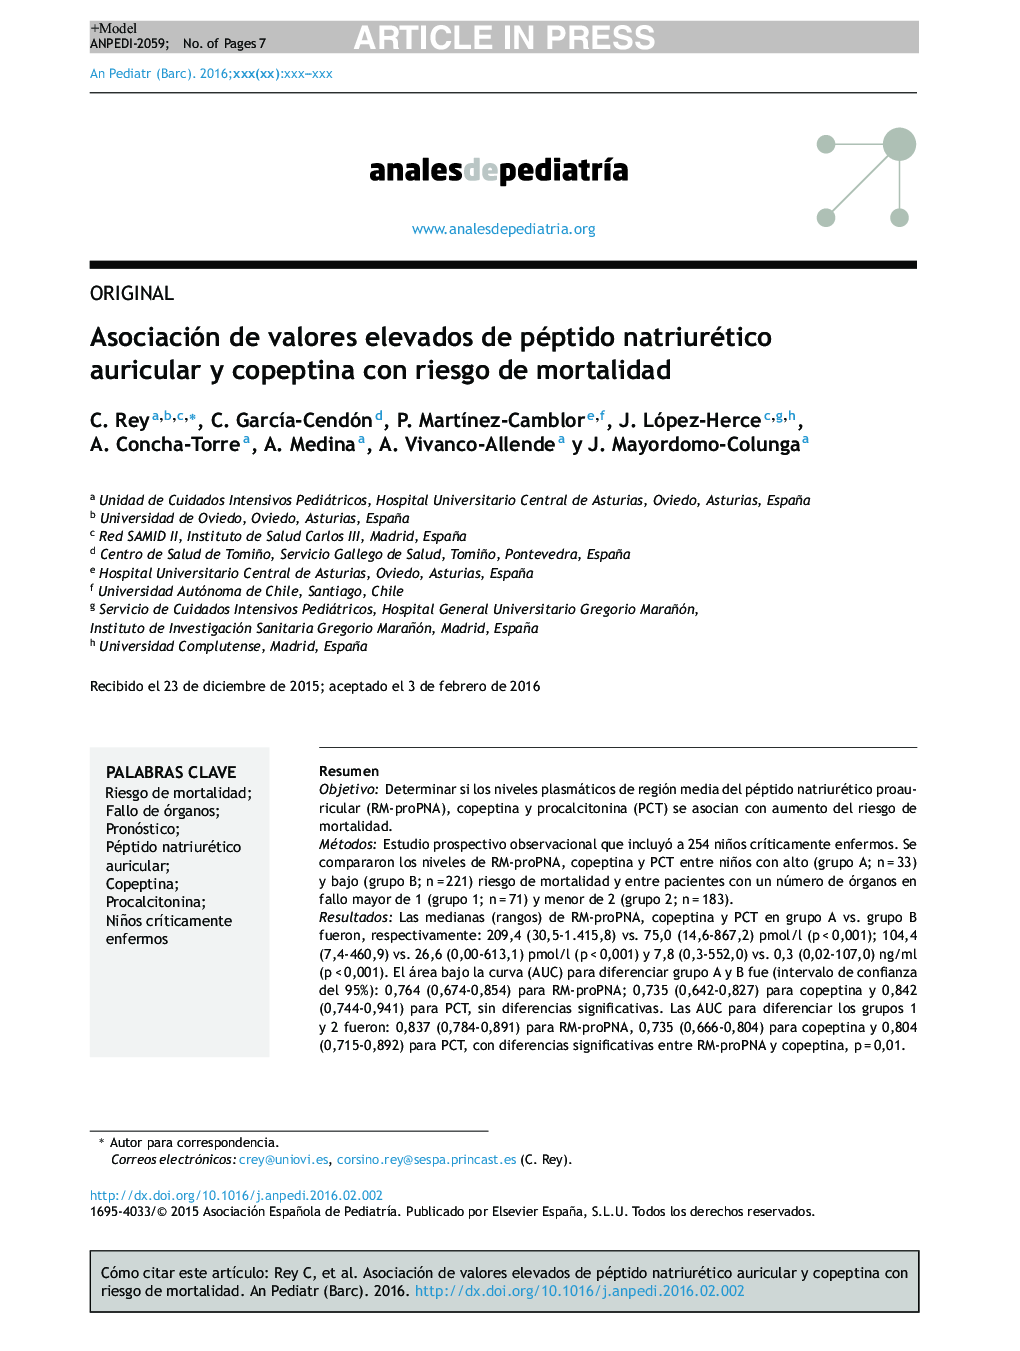 Asociación de valores elevados de péptido natriurético auricular y copeptina con riesgo de mortalidad